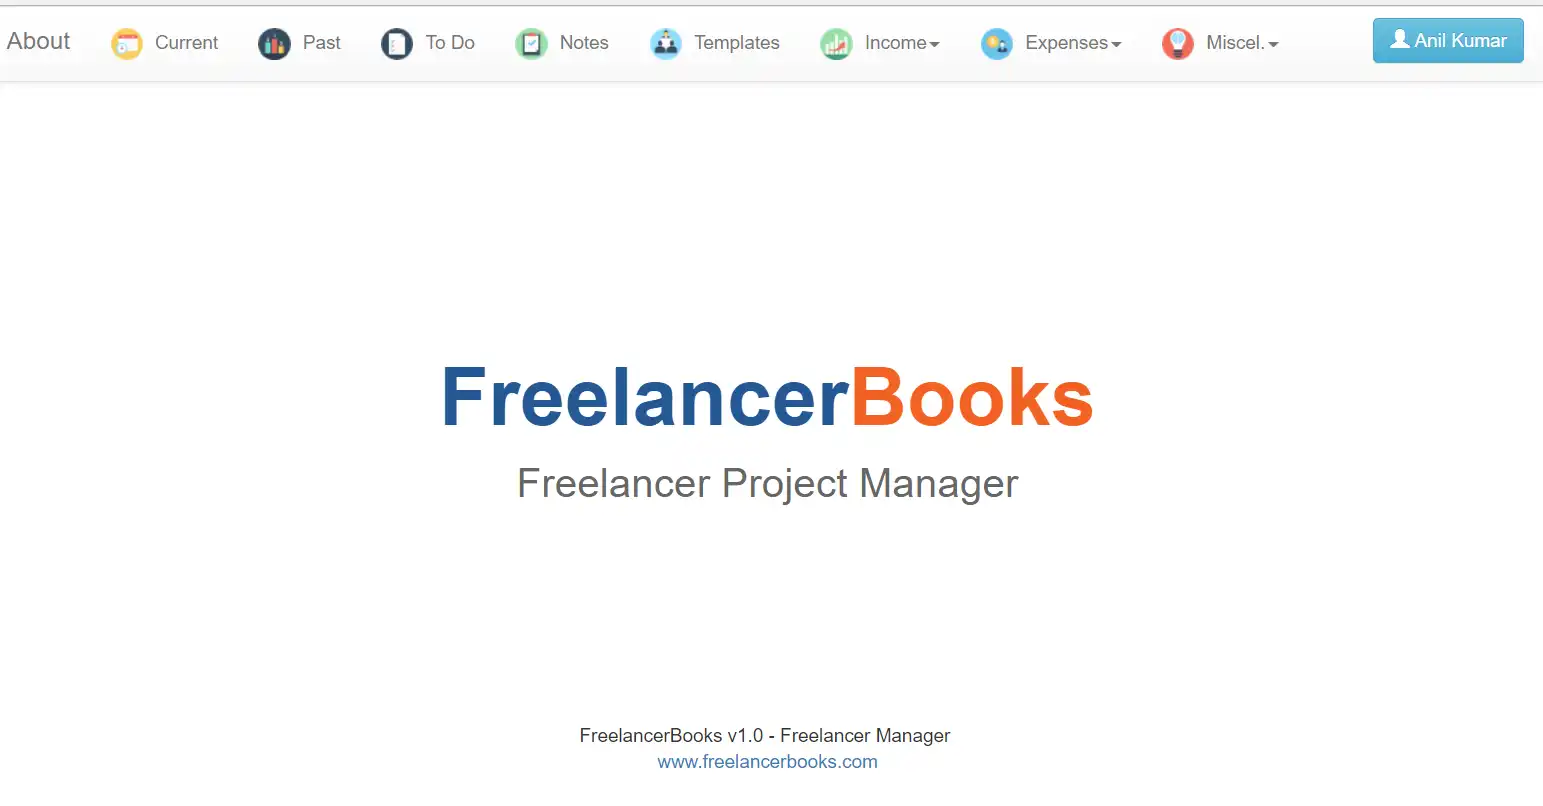 تنزيل أداة الويب أو تطبيق الويب FreelancerBooks - إدارة المشاريع